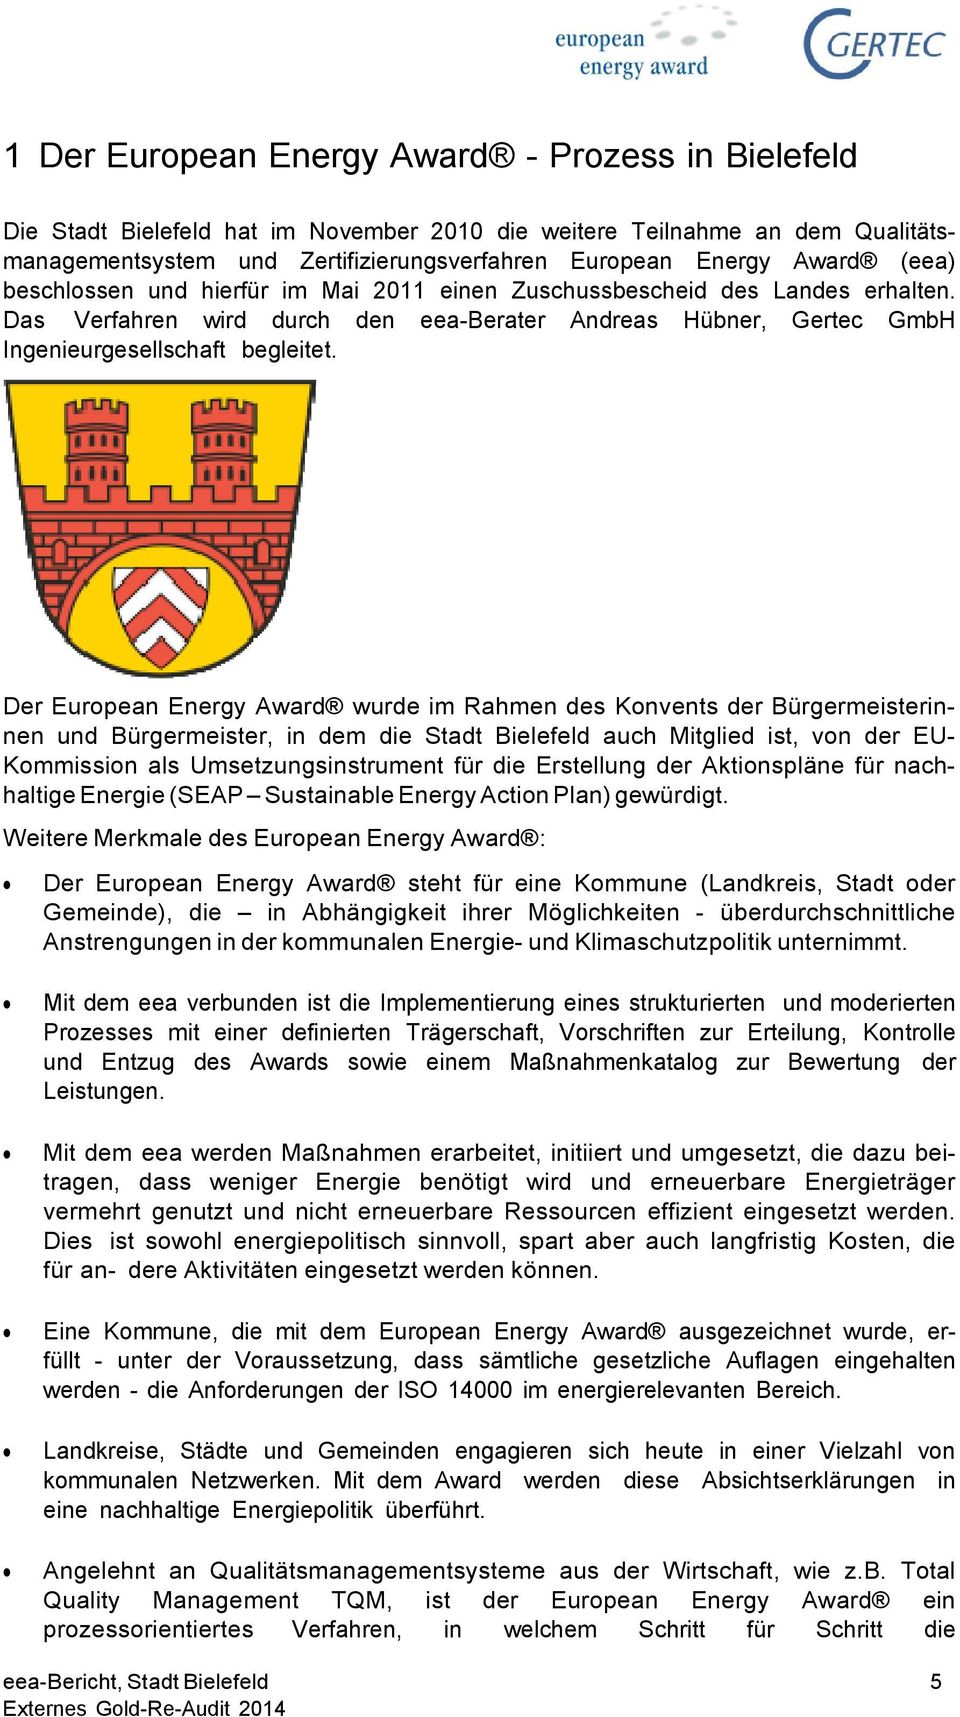 Der European Energy Award wurde im Rahmen des Konvents der Bürgermeisterinnen und Bürgermeister, in dem die Stadt Bielefeld auch Mitglied ist, von der EU- Kommission als Umsetzungsinstrument für die